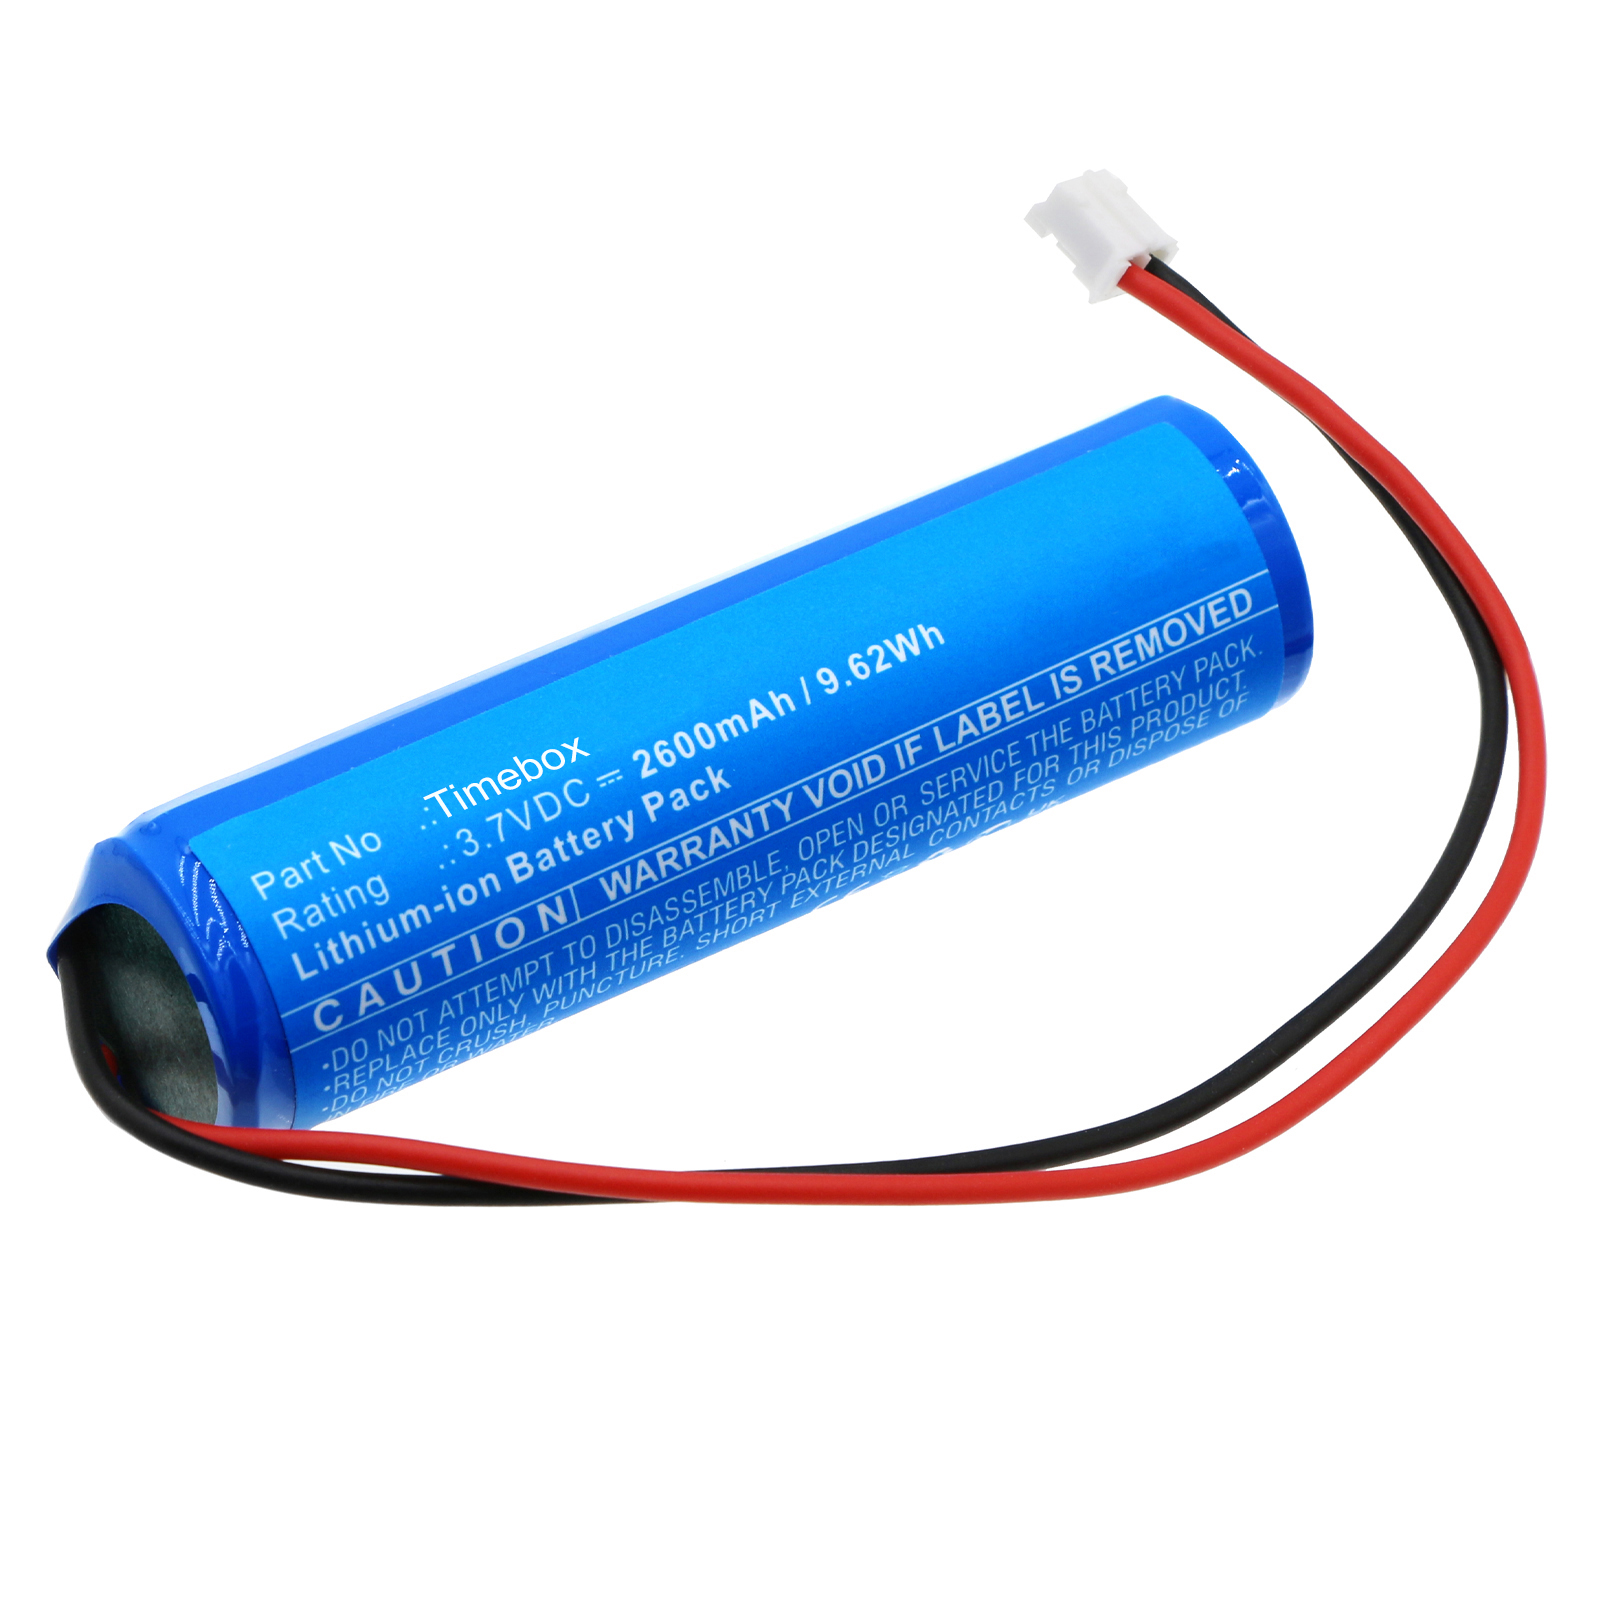 Synergy Digital Speaker Battery, Compatible with Divoom Timebox Speaker Battery (Li-ion, 3.7V, 2600mAh)